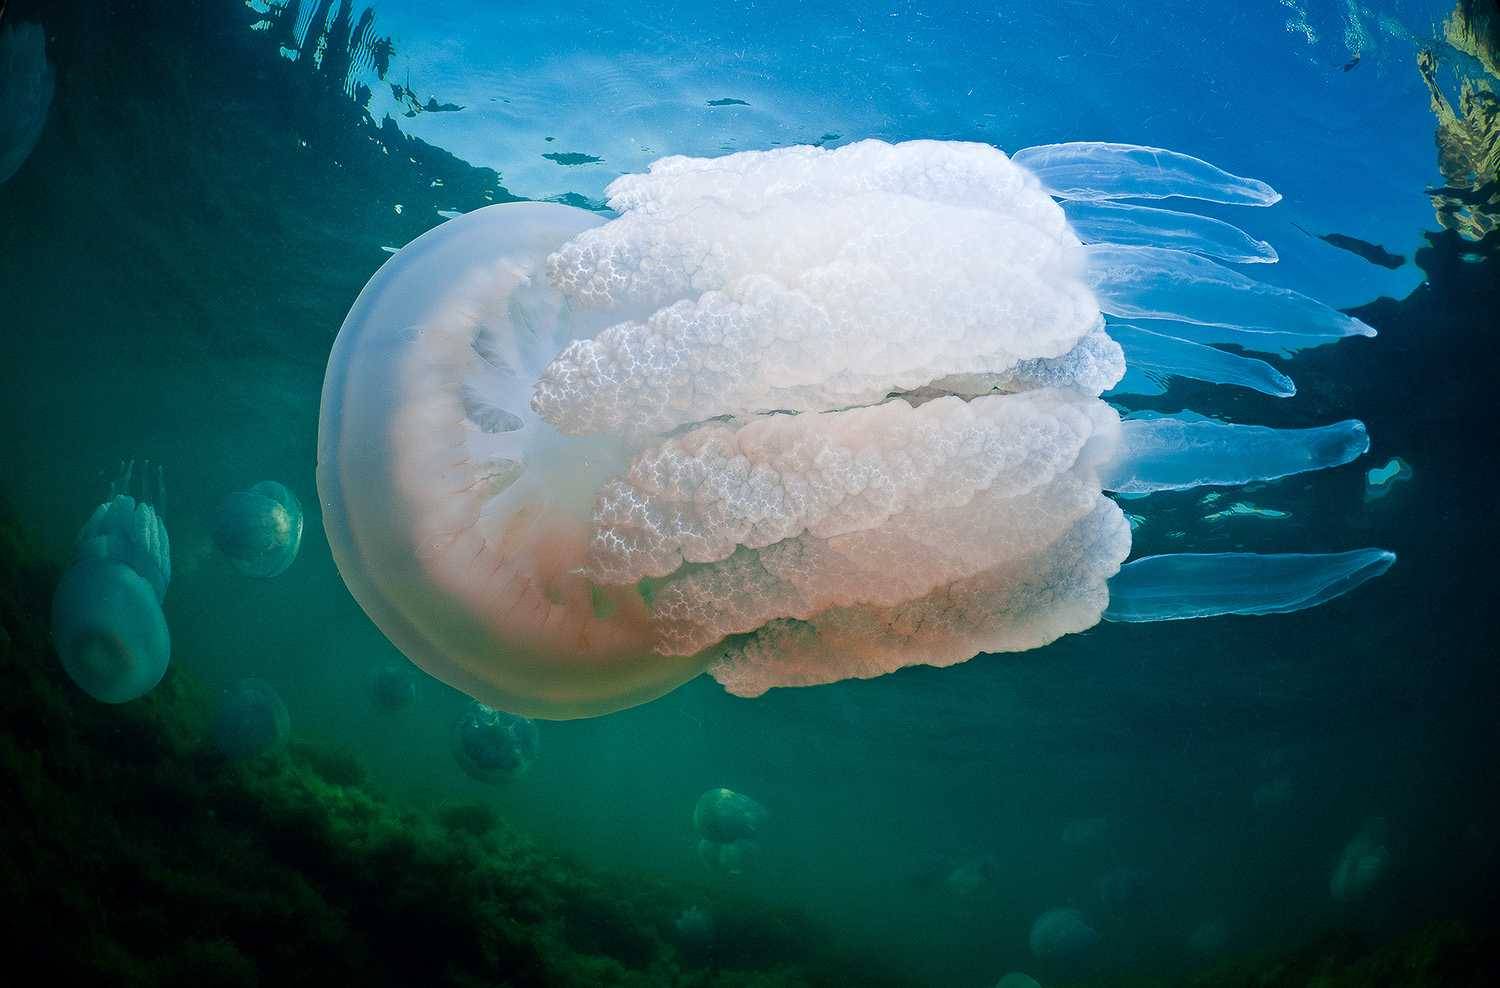 Какие медузы водятся в черном море? жалят ли они людей?